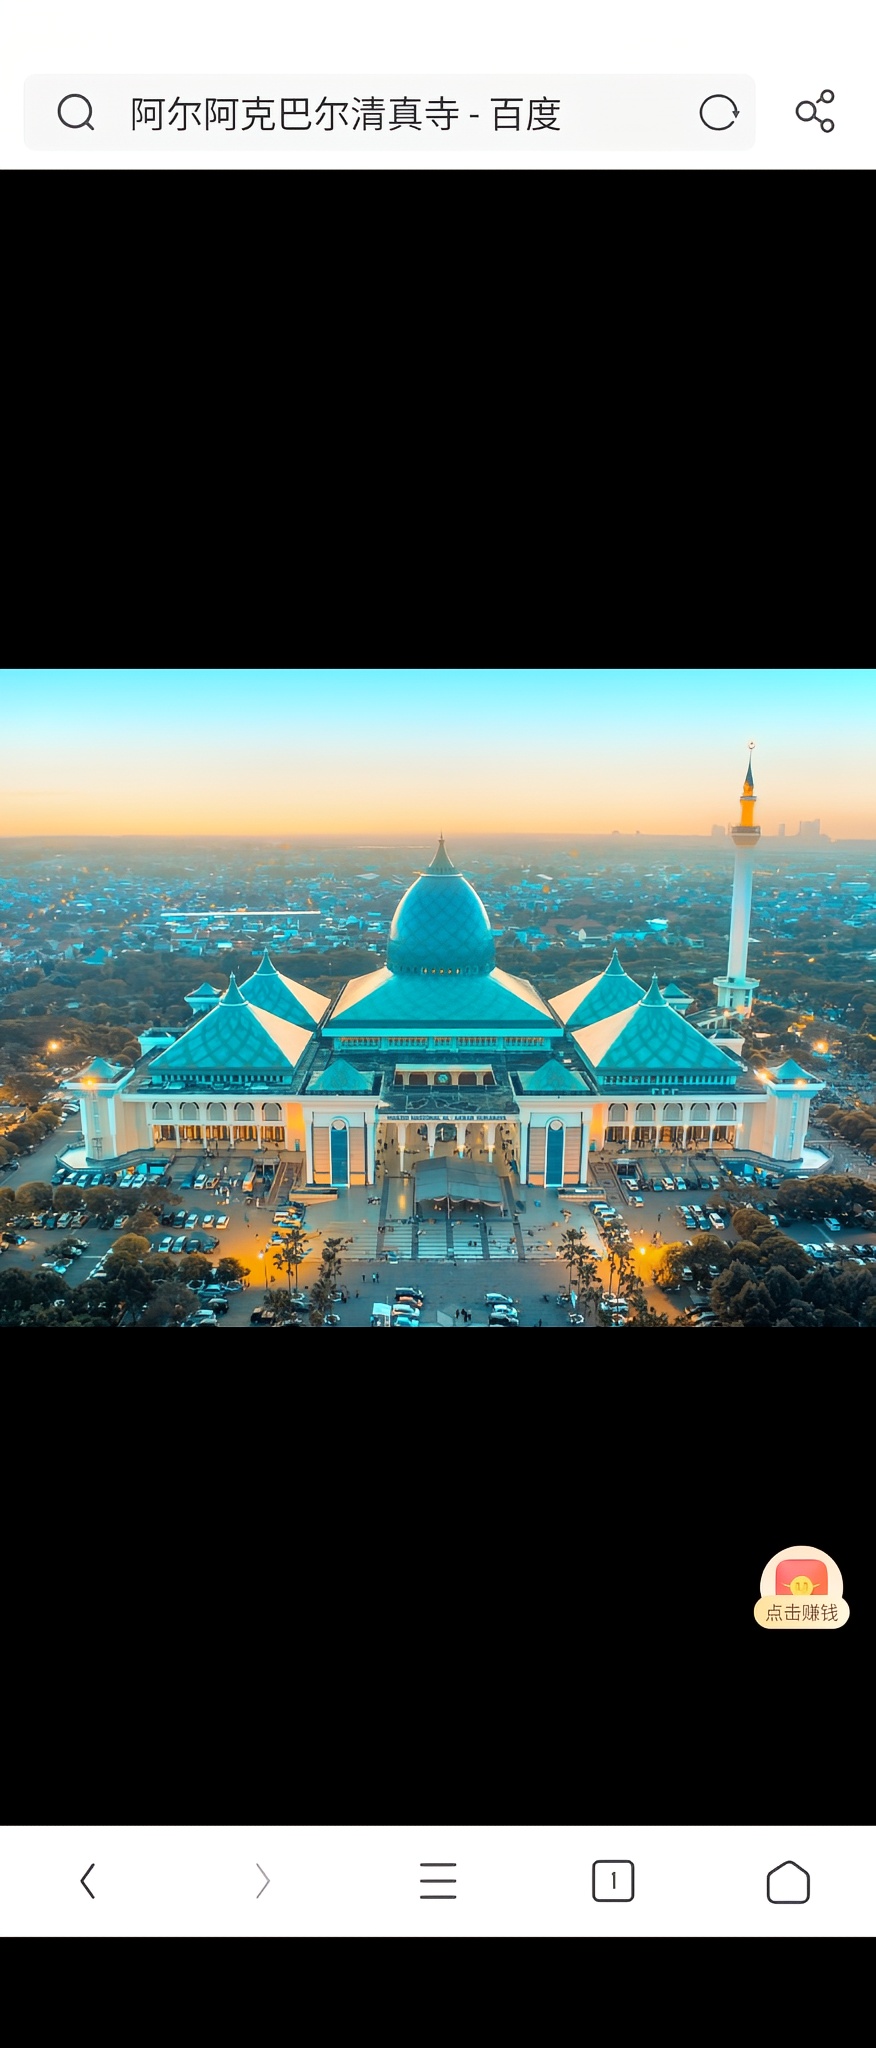 阿尔阿克巴尔清真寺是是印度尼西亚第二大清真寺。该清真寺是参照中东式风格来建造的，外观为水蓝色，十分漂